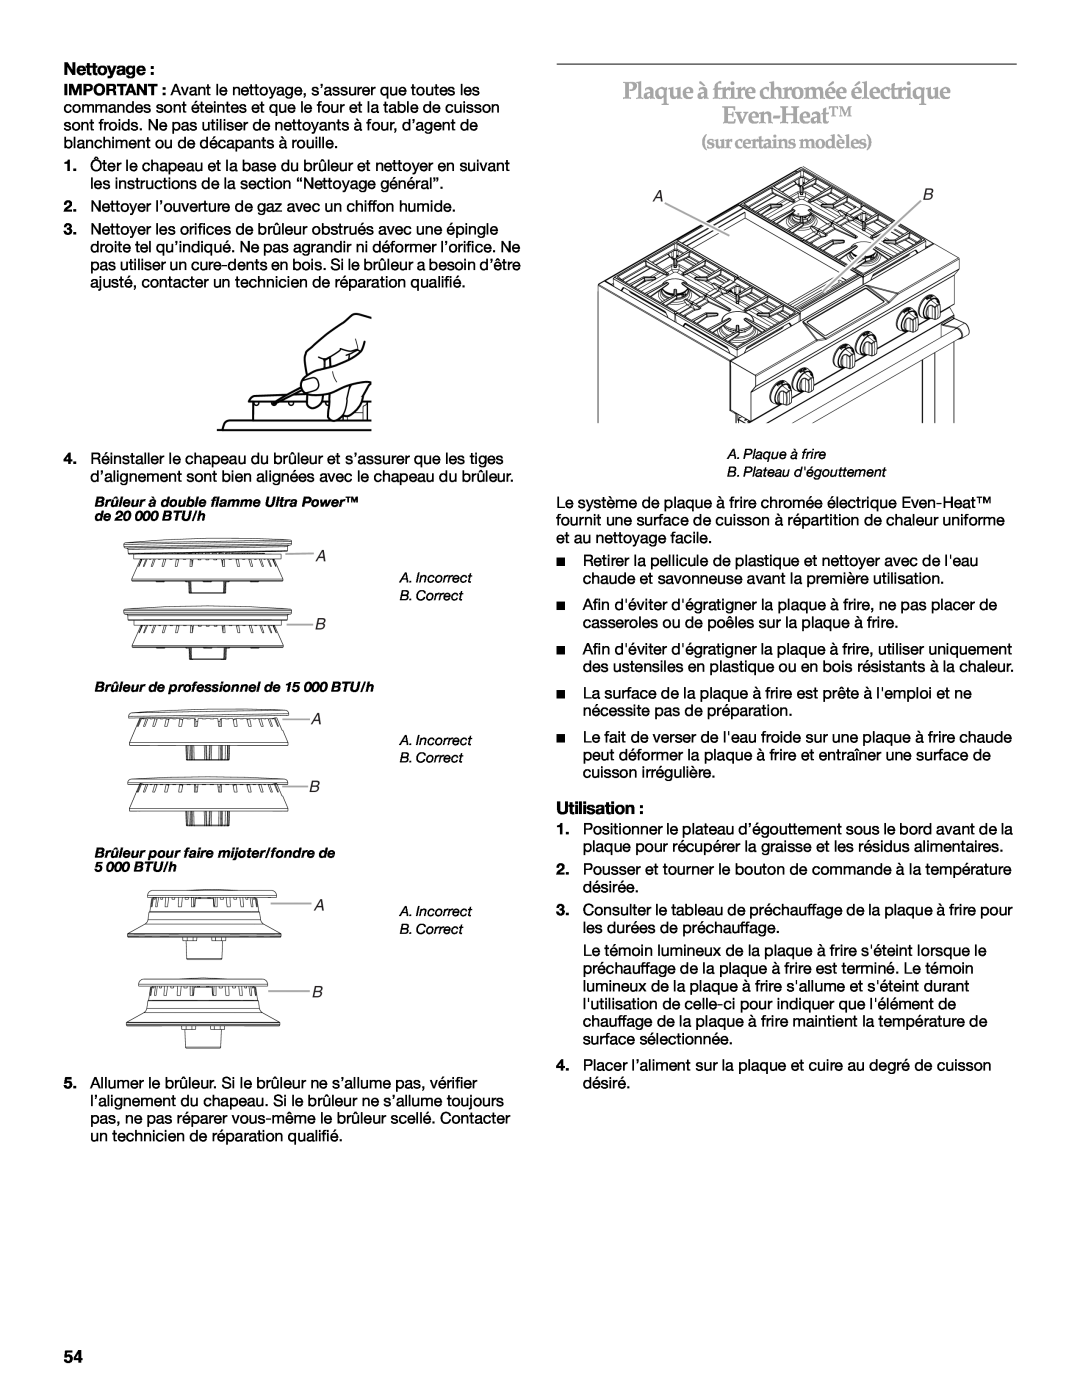 KitchenAid KDRU763.KDRU manual Plaqueà frire chromée électrique Even-Heat, sur certains modèles, Nettoyage, Utilisation 